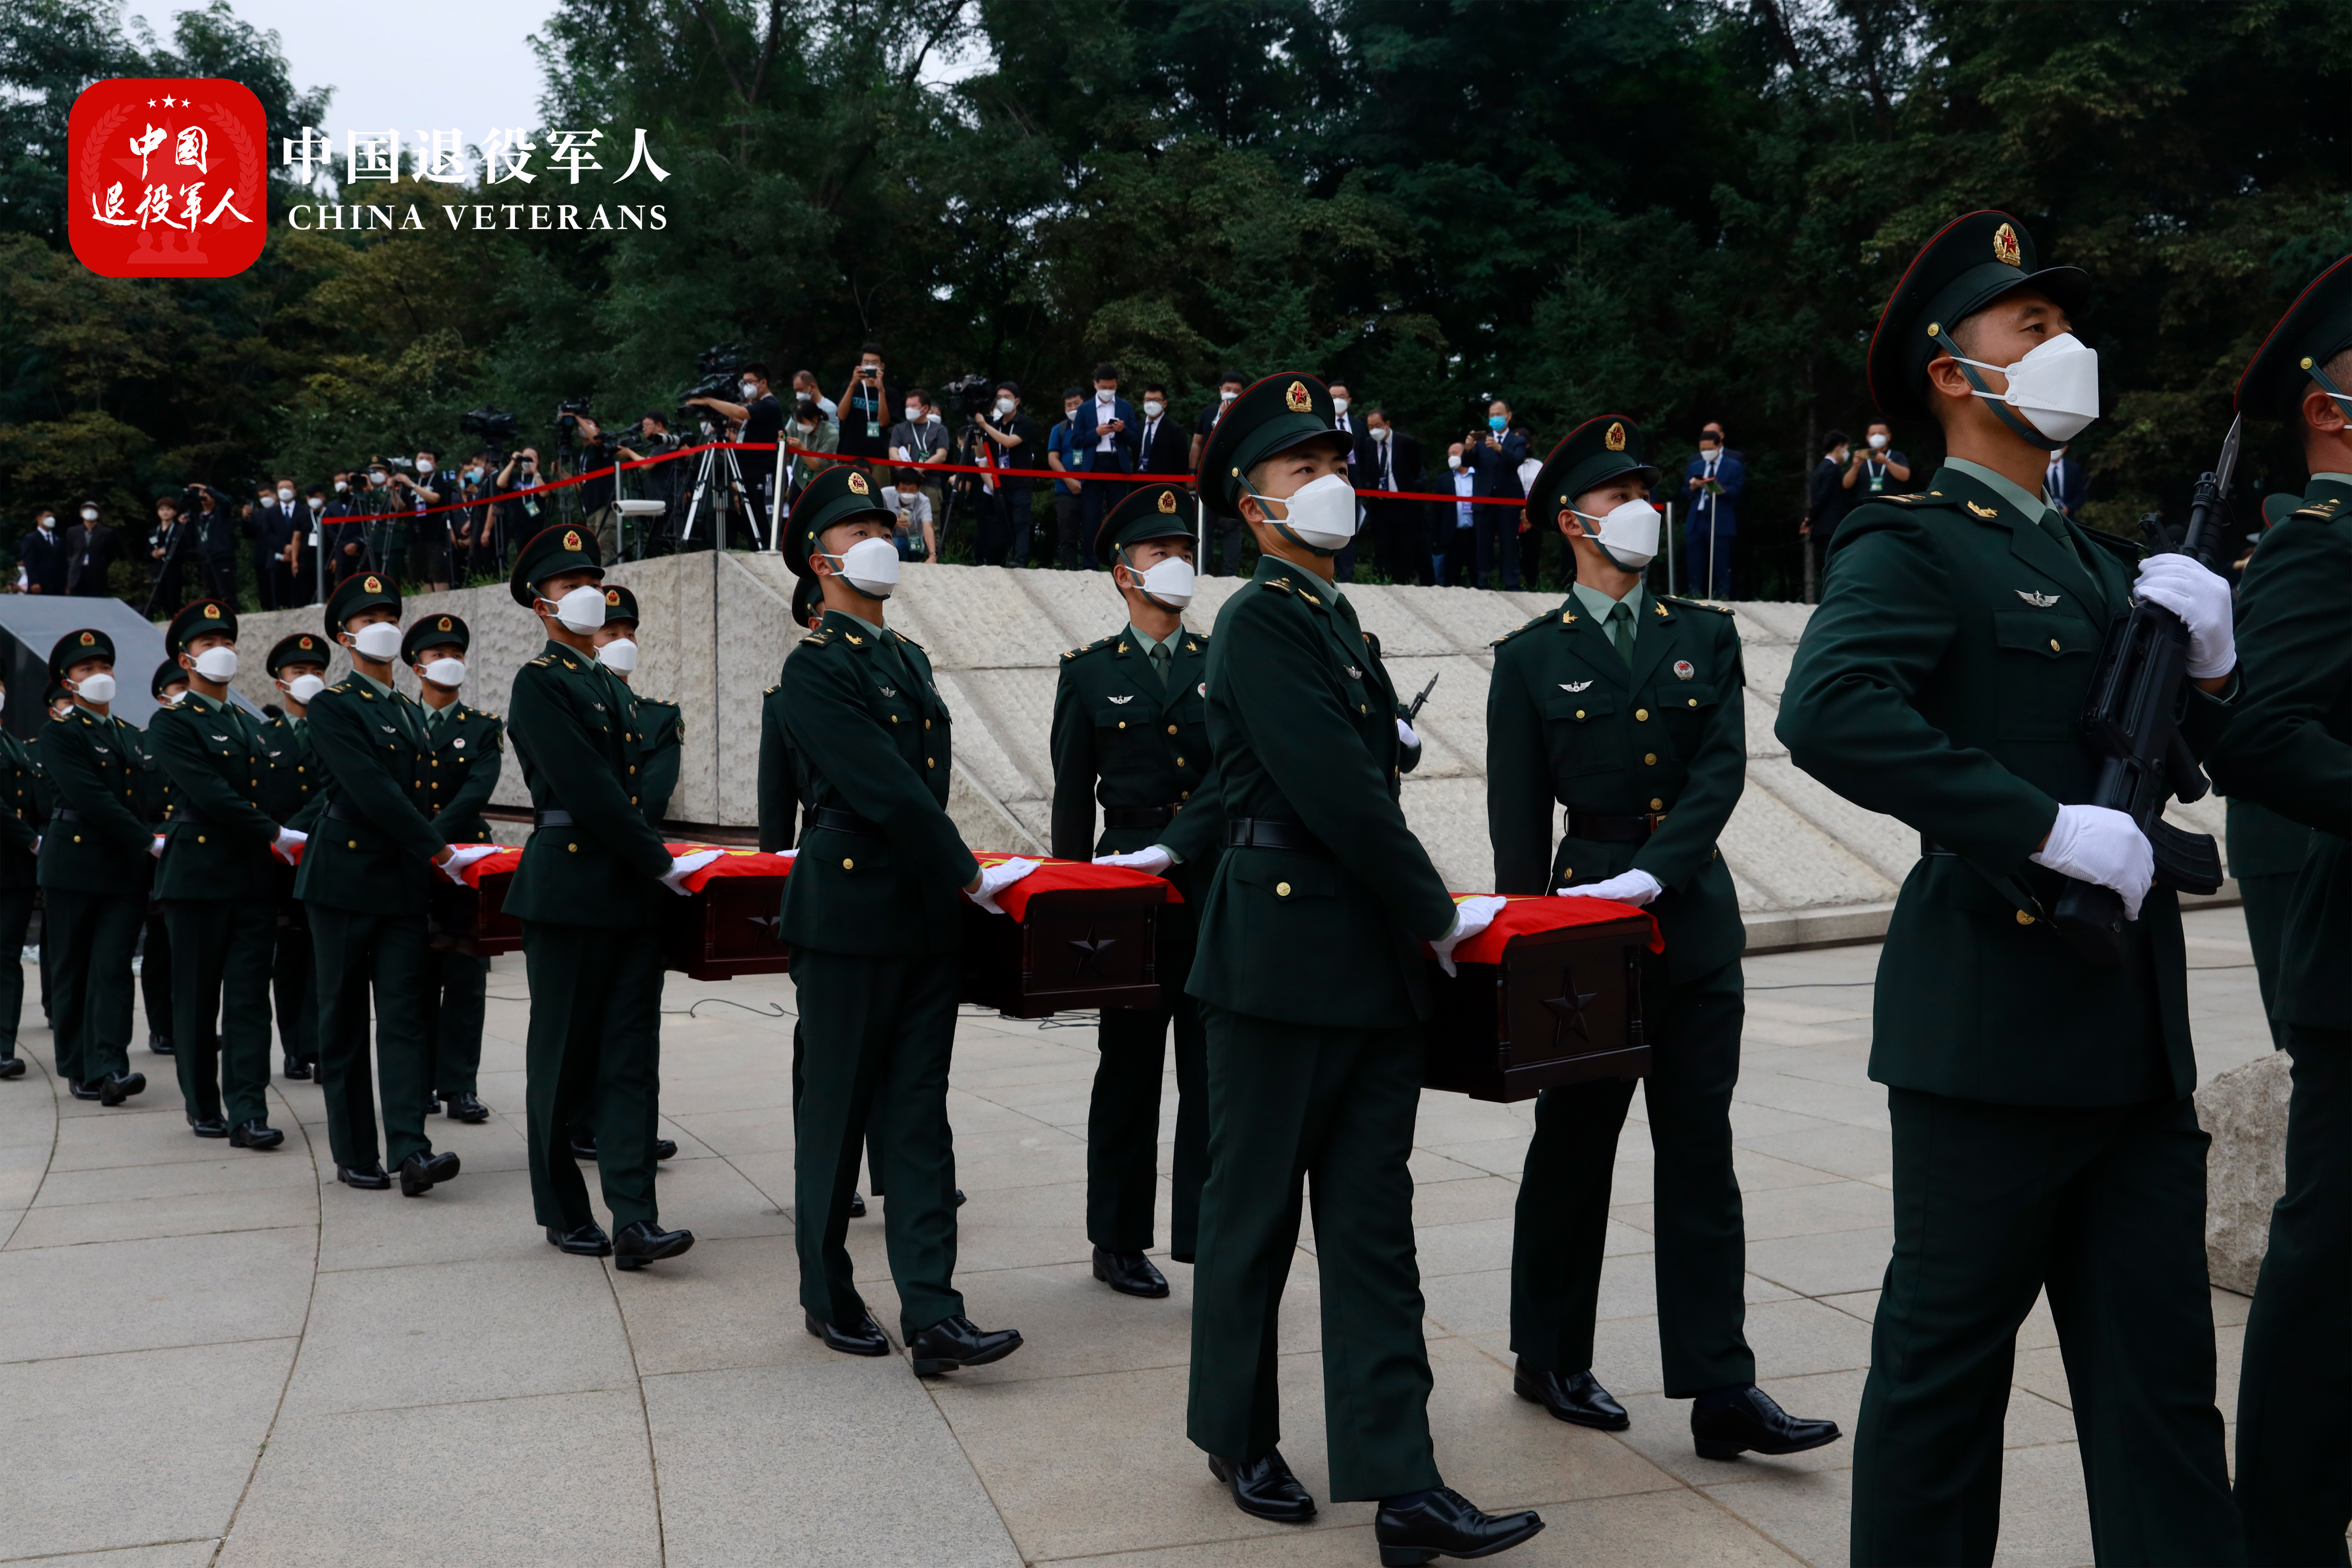 英雄回家 第八批在韩志愿军烈士遗骸安葬仪式-现场图